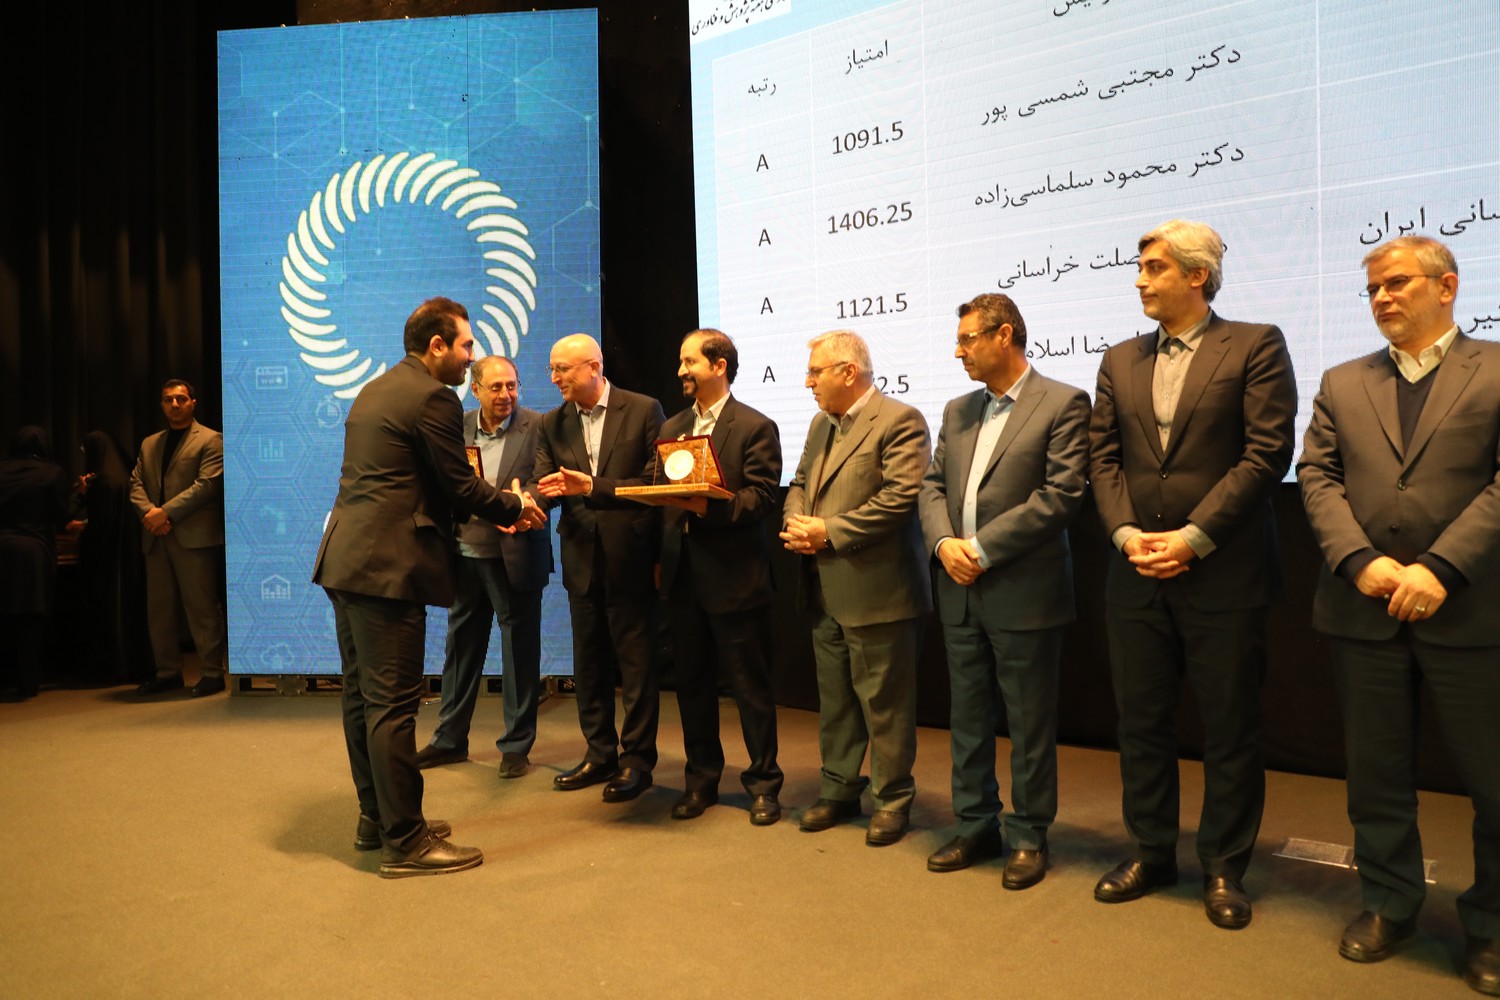 انجمن علمی آموزش و توسعه منابع انسانی ایران به عنوان انجمن برتر کشوری شناخته شد